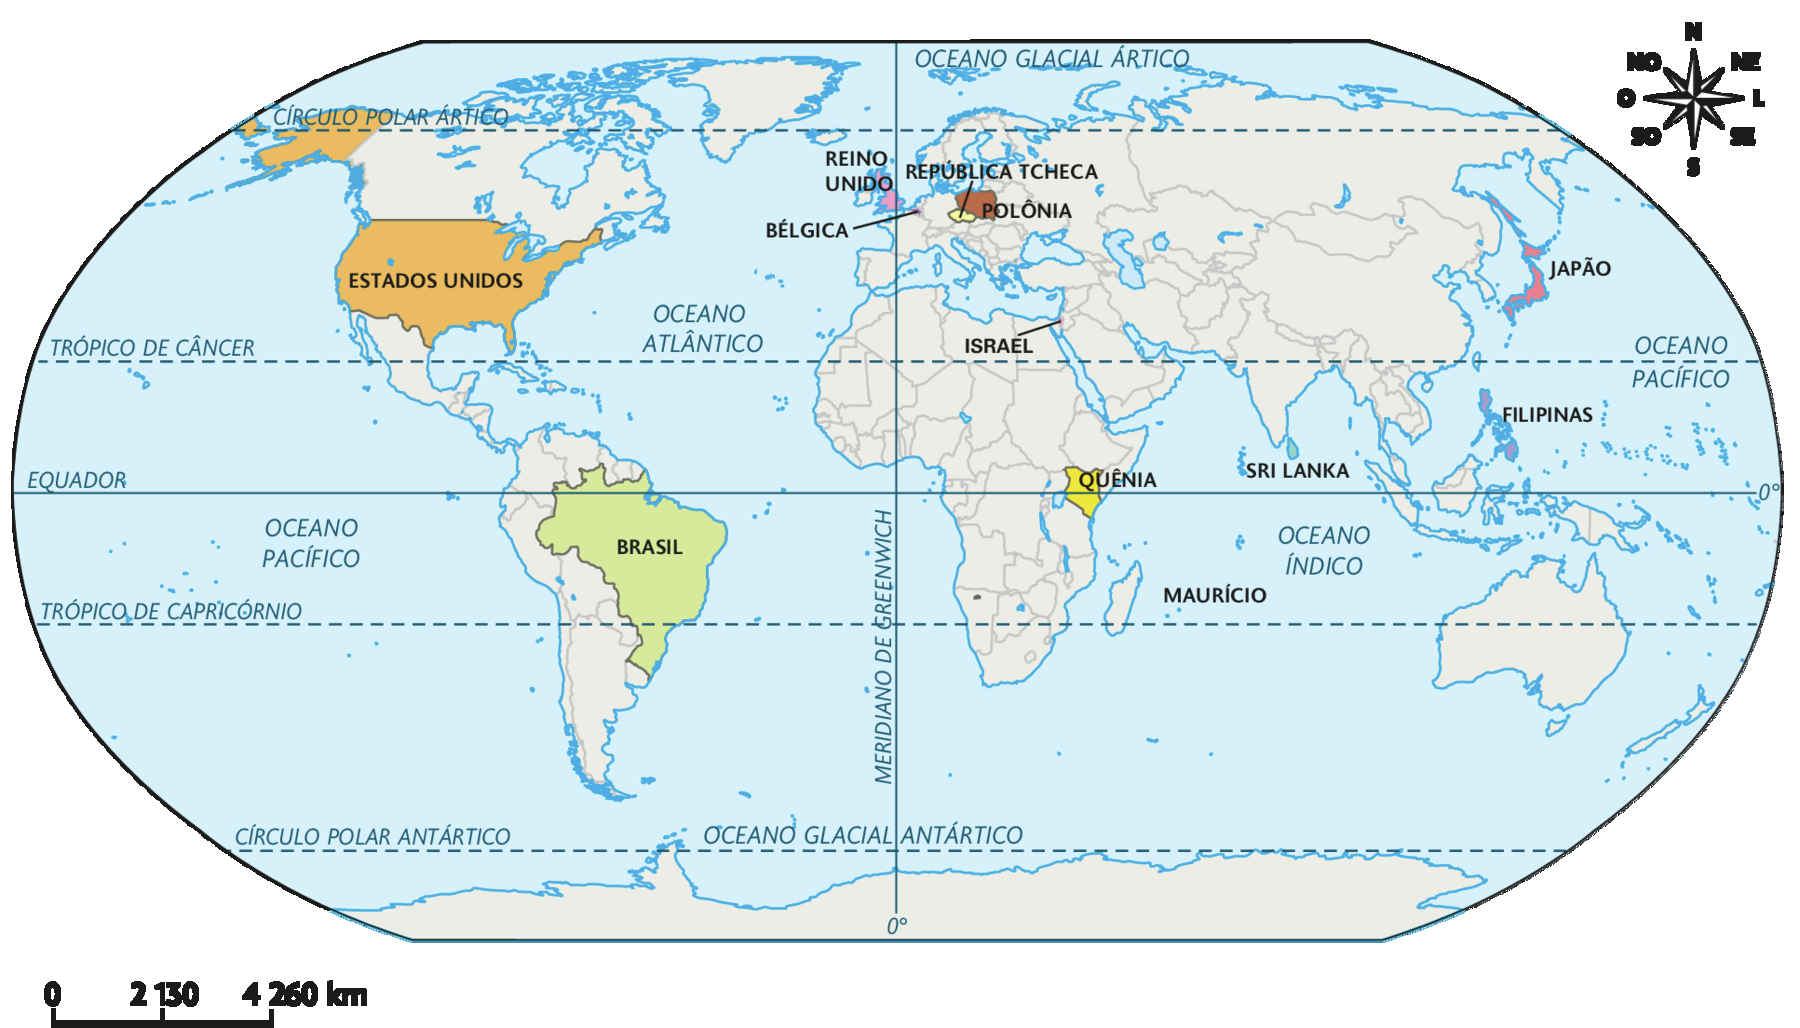 Mapa. Planisfério político (2018), com destaque para Estados Unidos, incluindo o Alasca, Brasil, Reino Unido, Bélgica, República Tcheca, Polônia, Israel, Quênia, Sri Lanka, ilhas Maurício, Filipinas e Japão. No canto superior direito, a rosa dos ventos e no canto inferior esquerdo, a escala: 2130 quilômetros por centímetro.